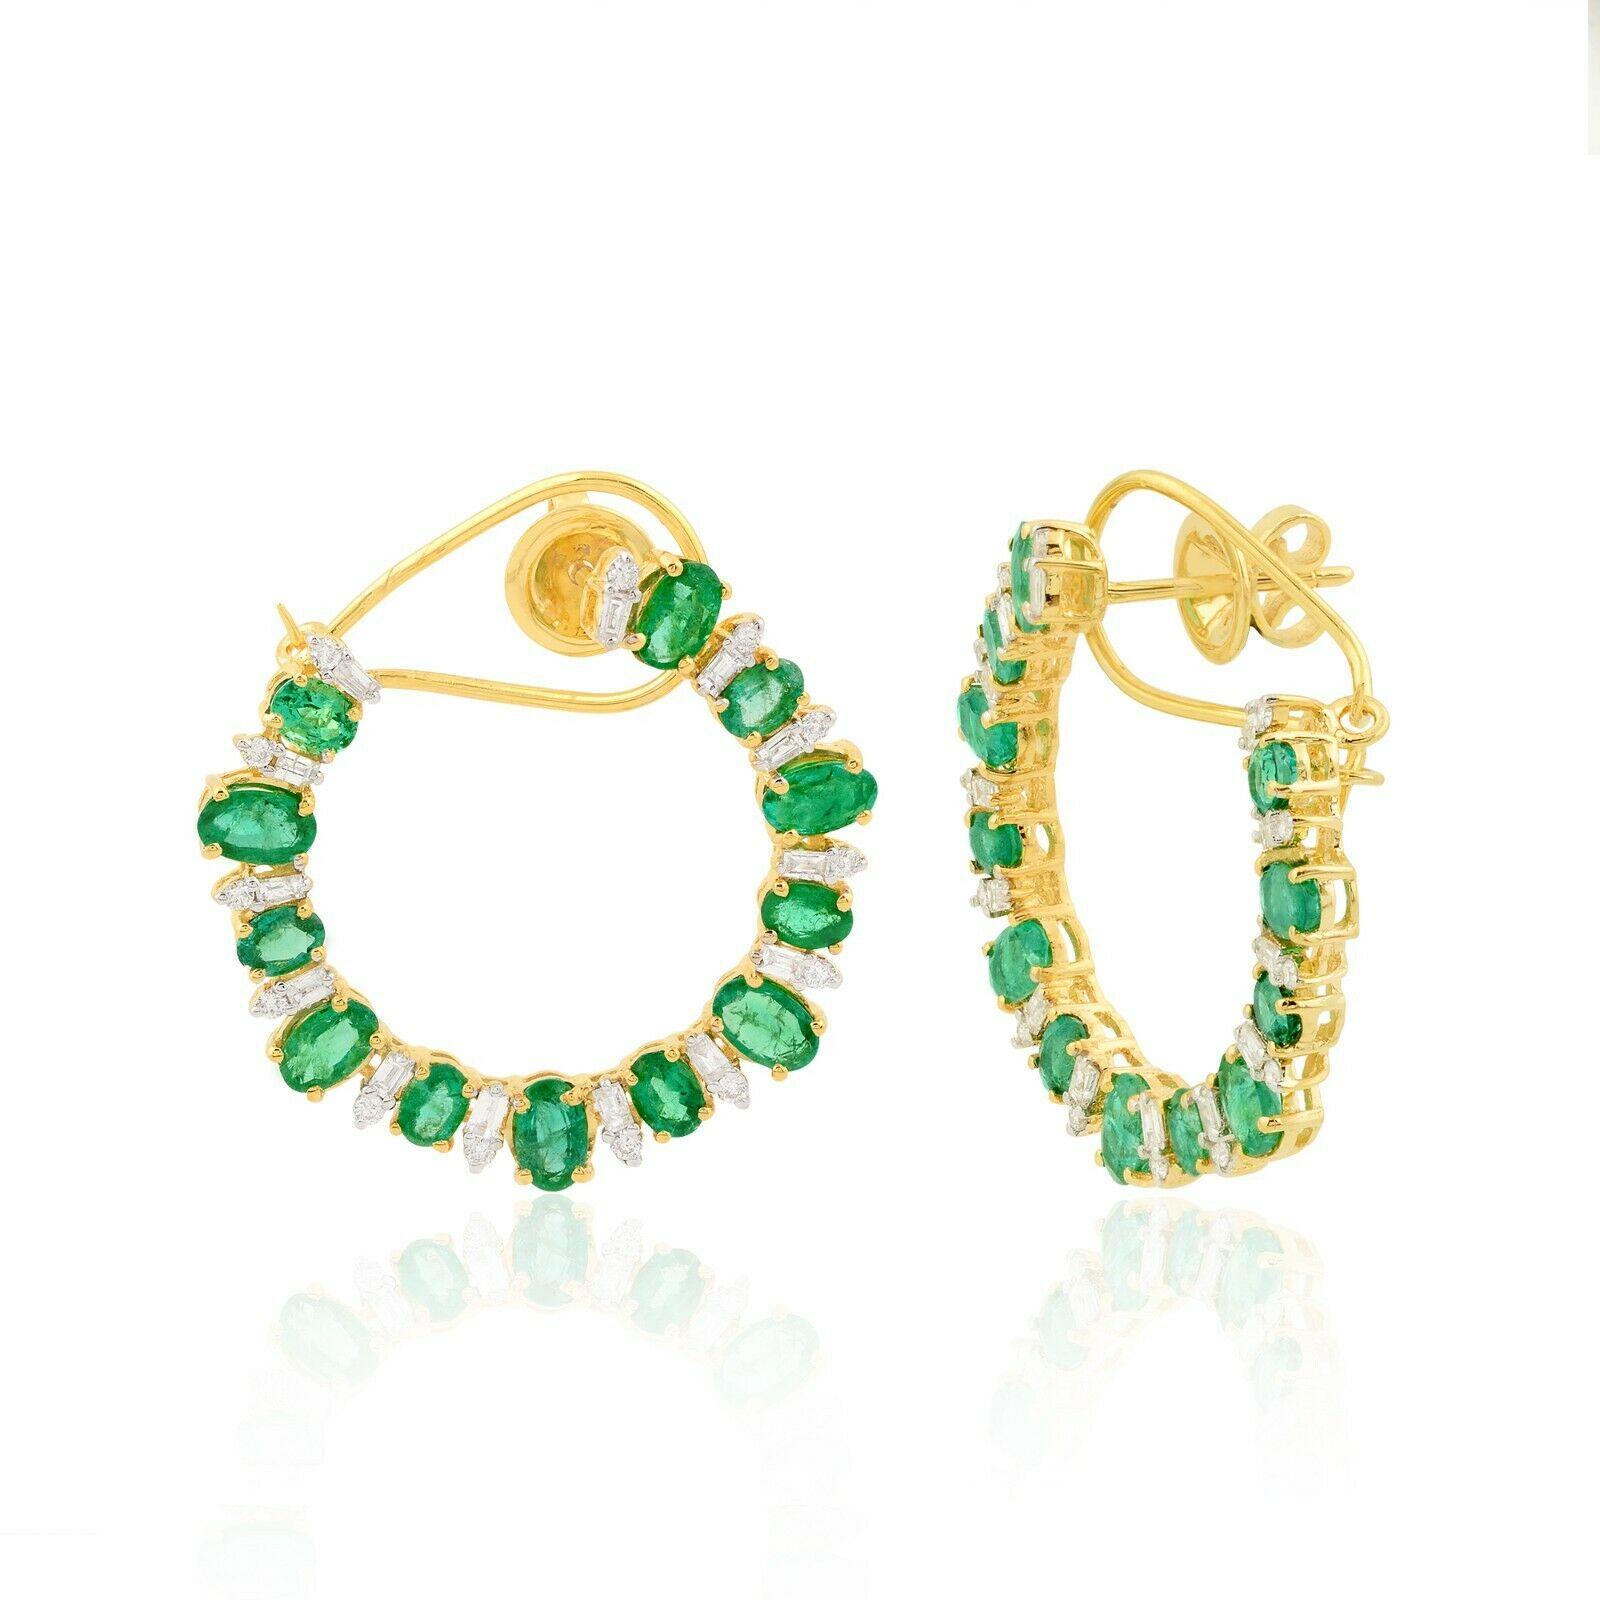 Diese wunderschönen Ohrringe aus 14-karätigem Gold sind von Hand mit 4,94 Karat Smaragd und 0,90 Karat funkelnden Diamanten besetzt. 

FOLGEN  MEGHNA JEWELS Storefront, um die neueste Kollektion und exklusive Stücke zu sehen.  Meghna Jewels ist